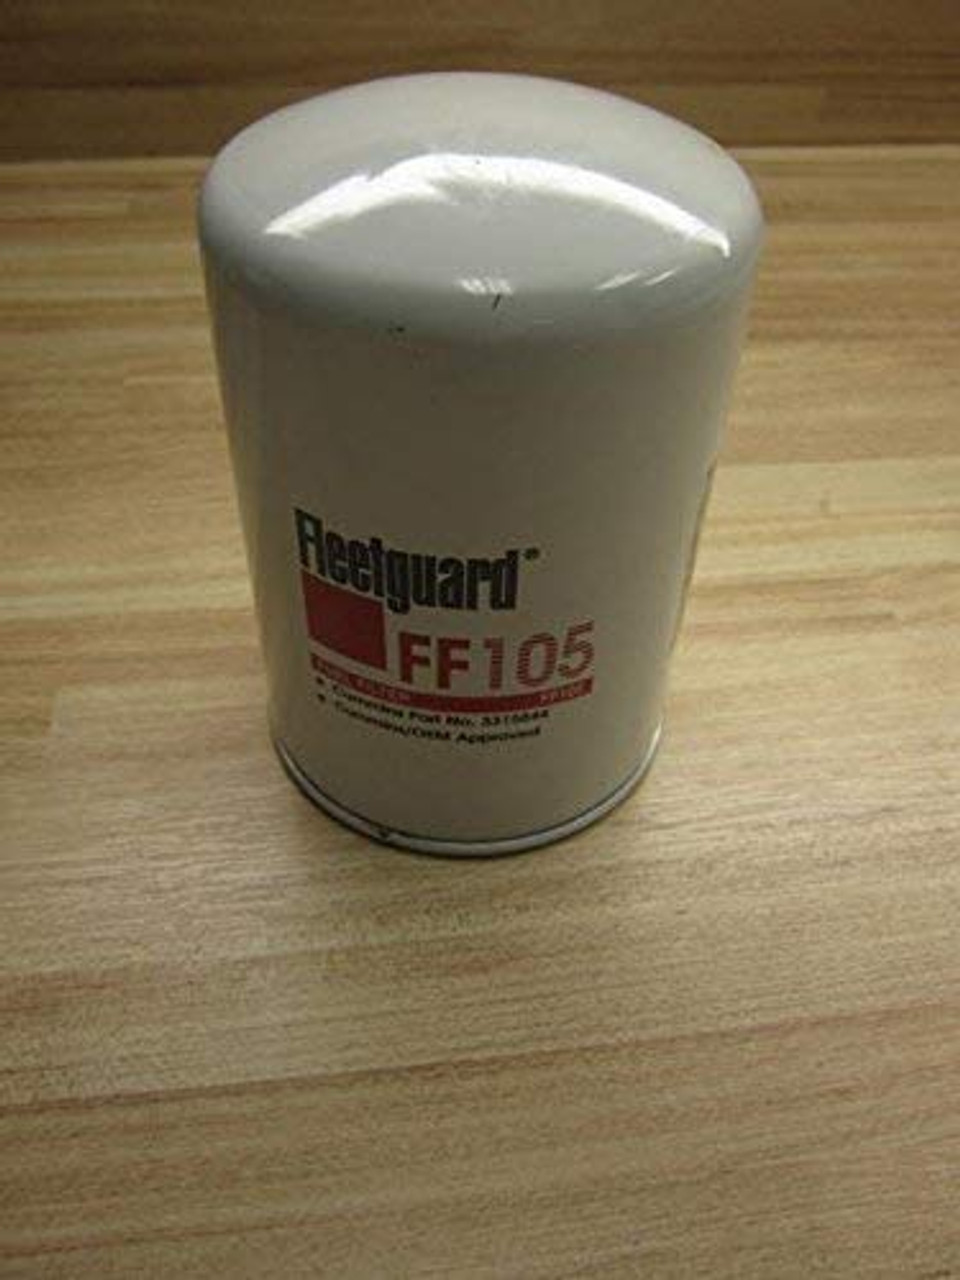 Fleetguard FF105 Fuel Filter Spin-on